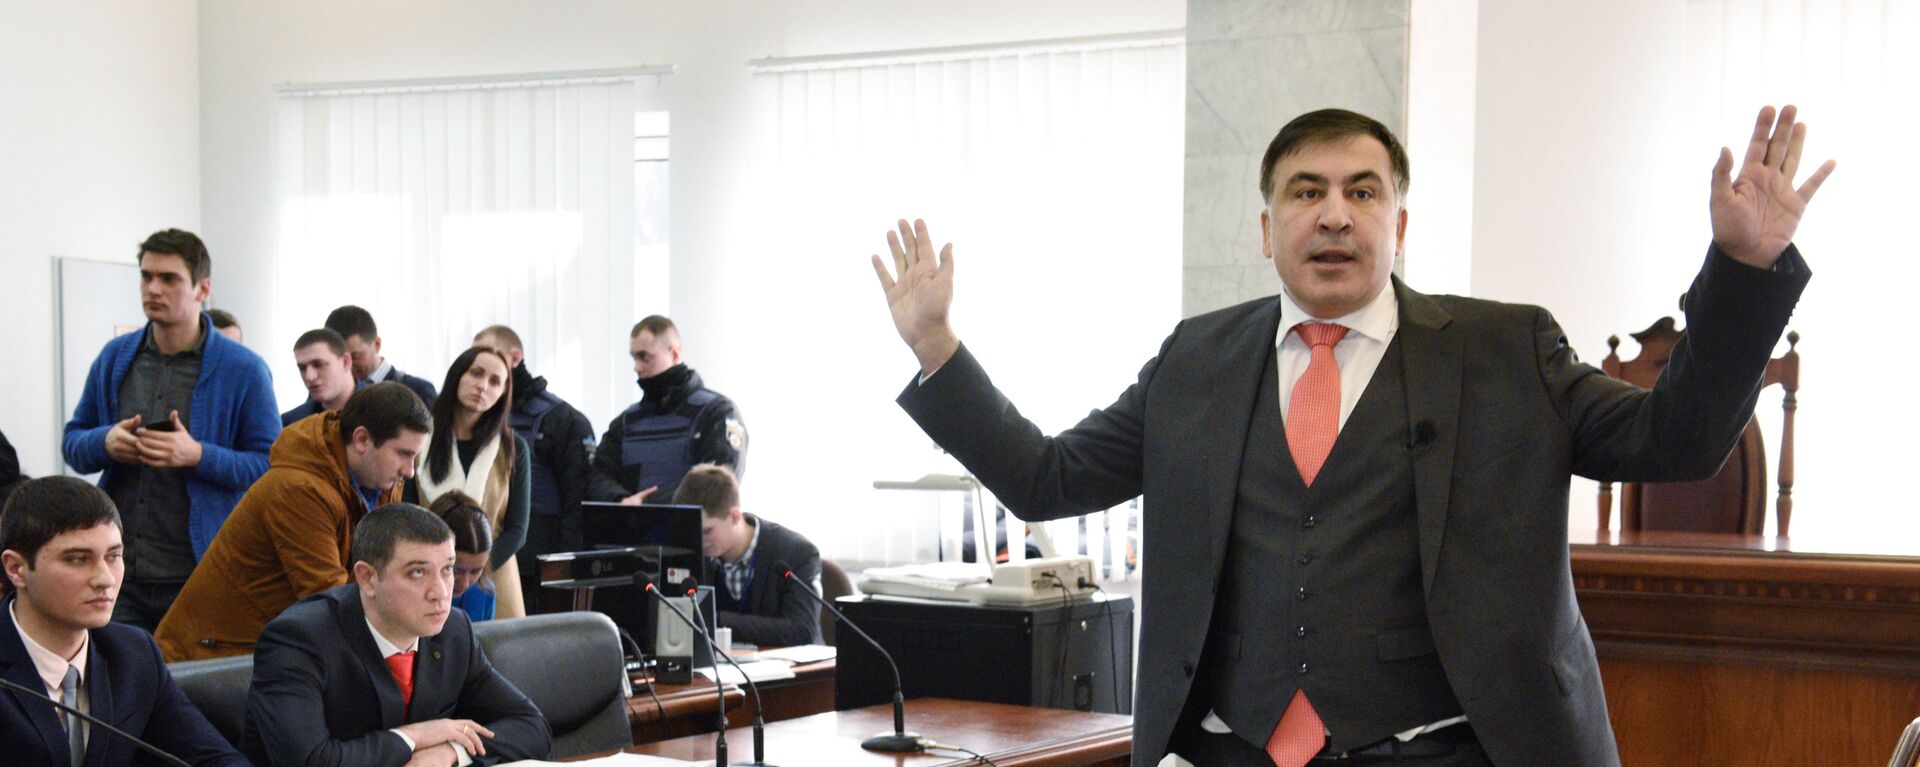 Суд над М. Саакашвили в Киеве - Sputnik Грузия, 1920, 10.11.2021